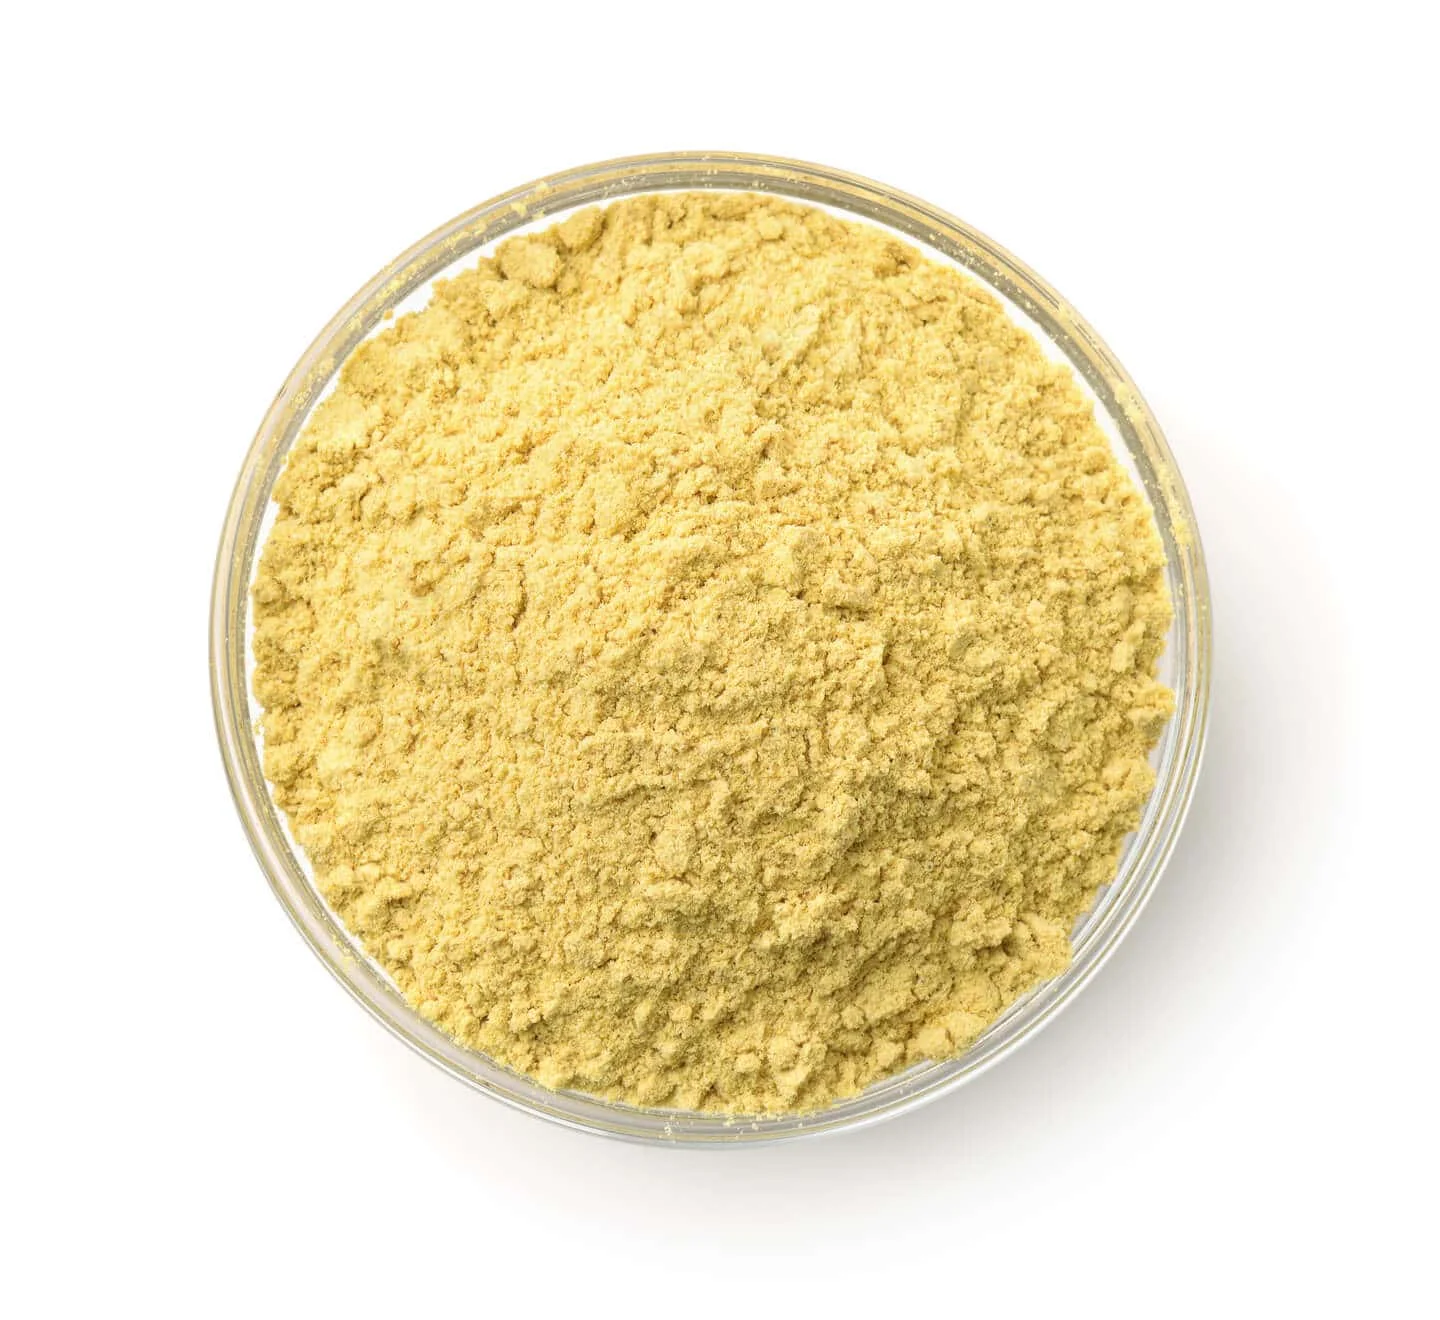 Graines PINE POLLEN (Pollen de pin) - Produit de qualité supérieure de  l'original, Certifié ISO-9001